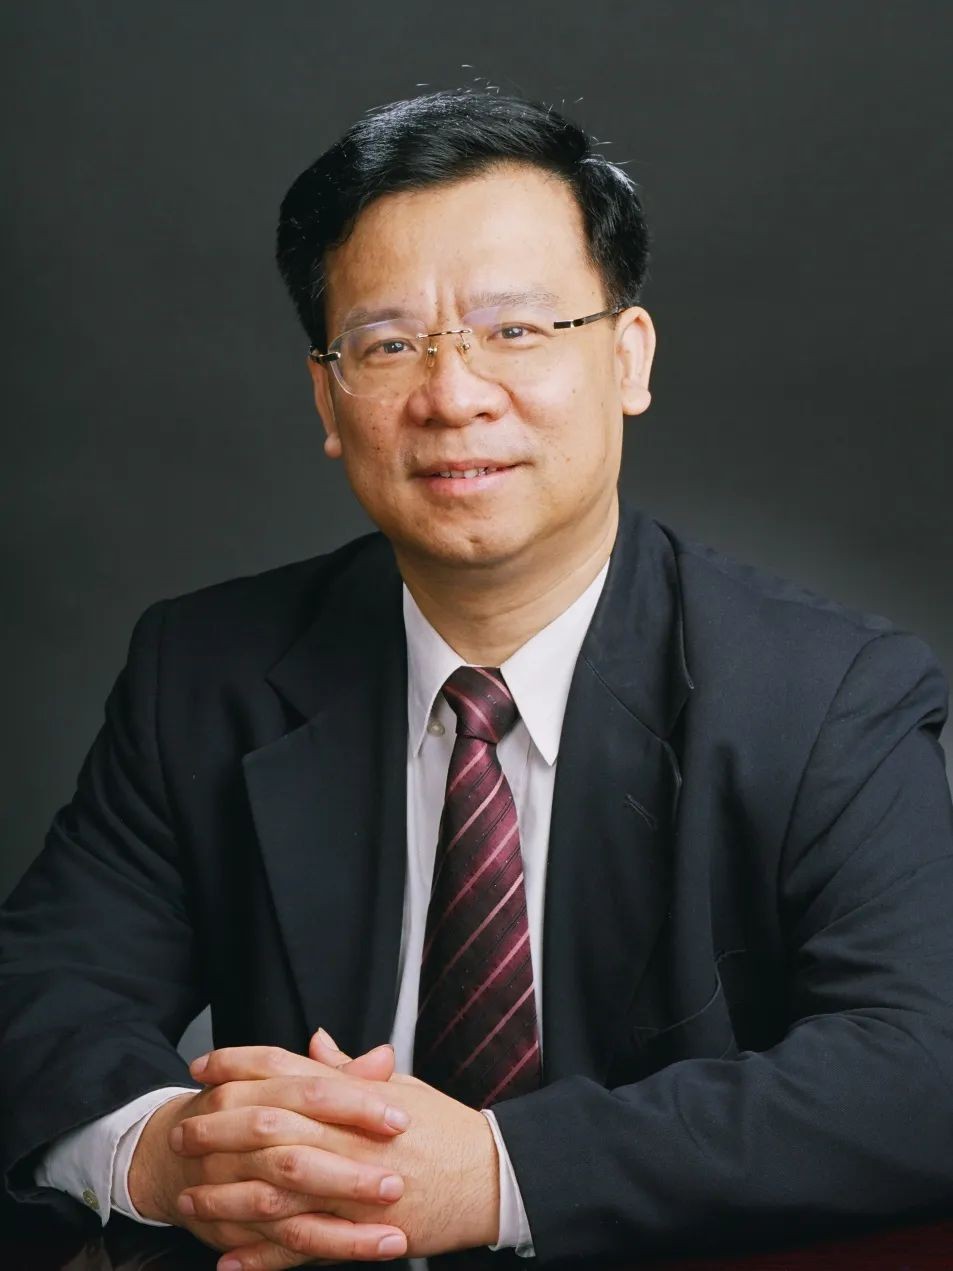 二级教授、一级主任医师 黄健